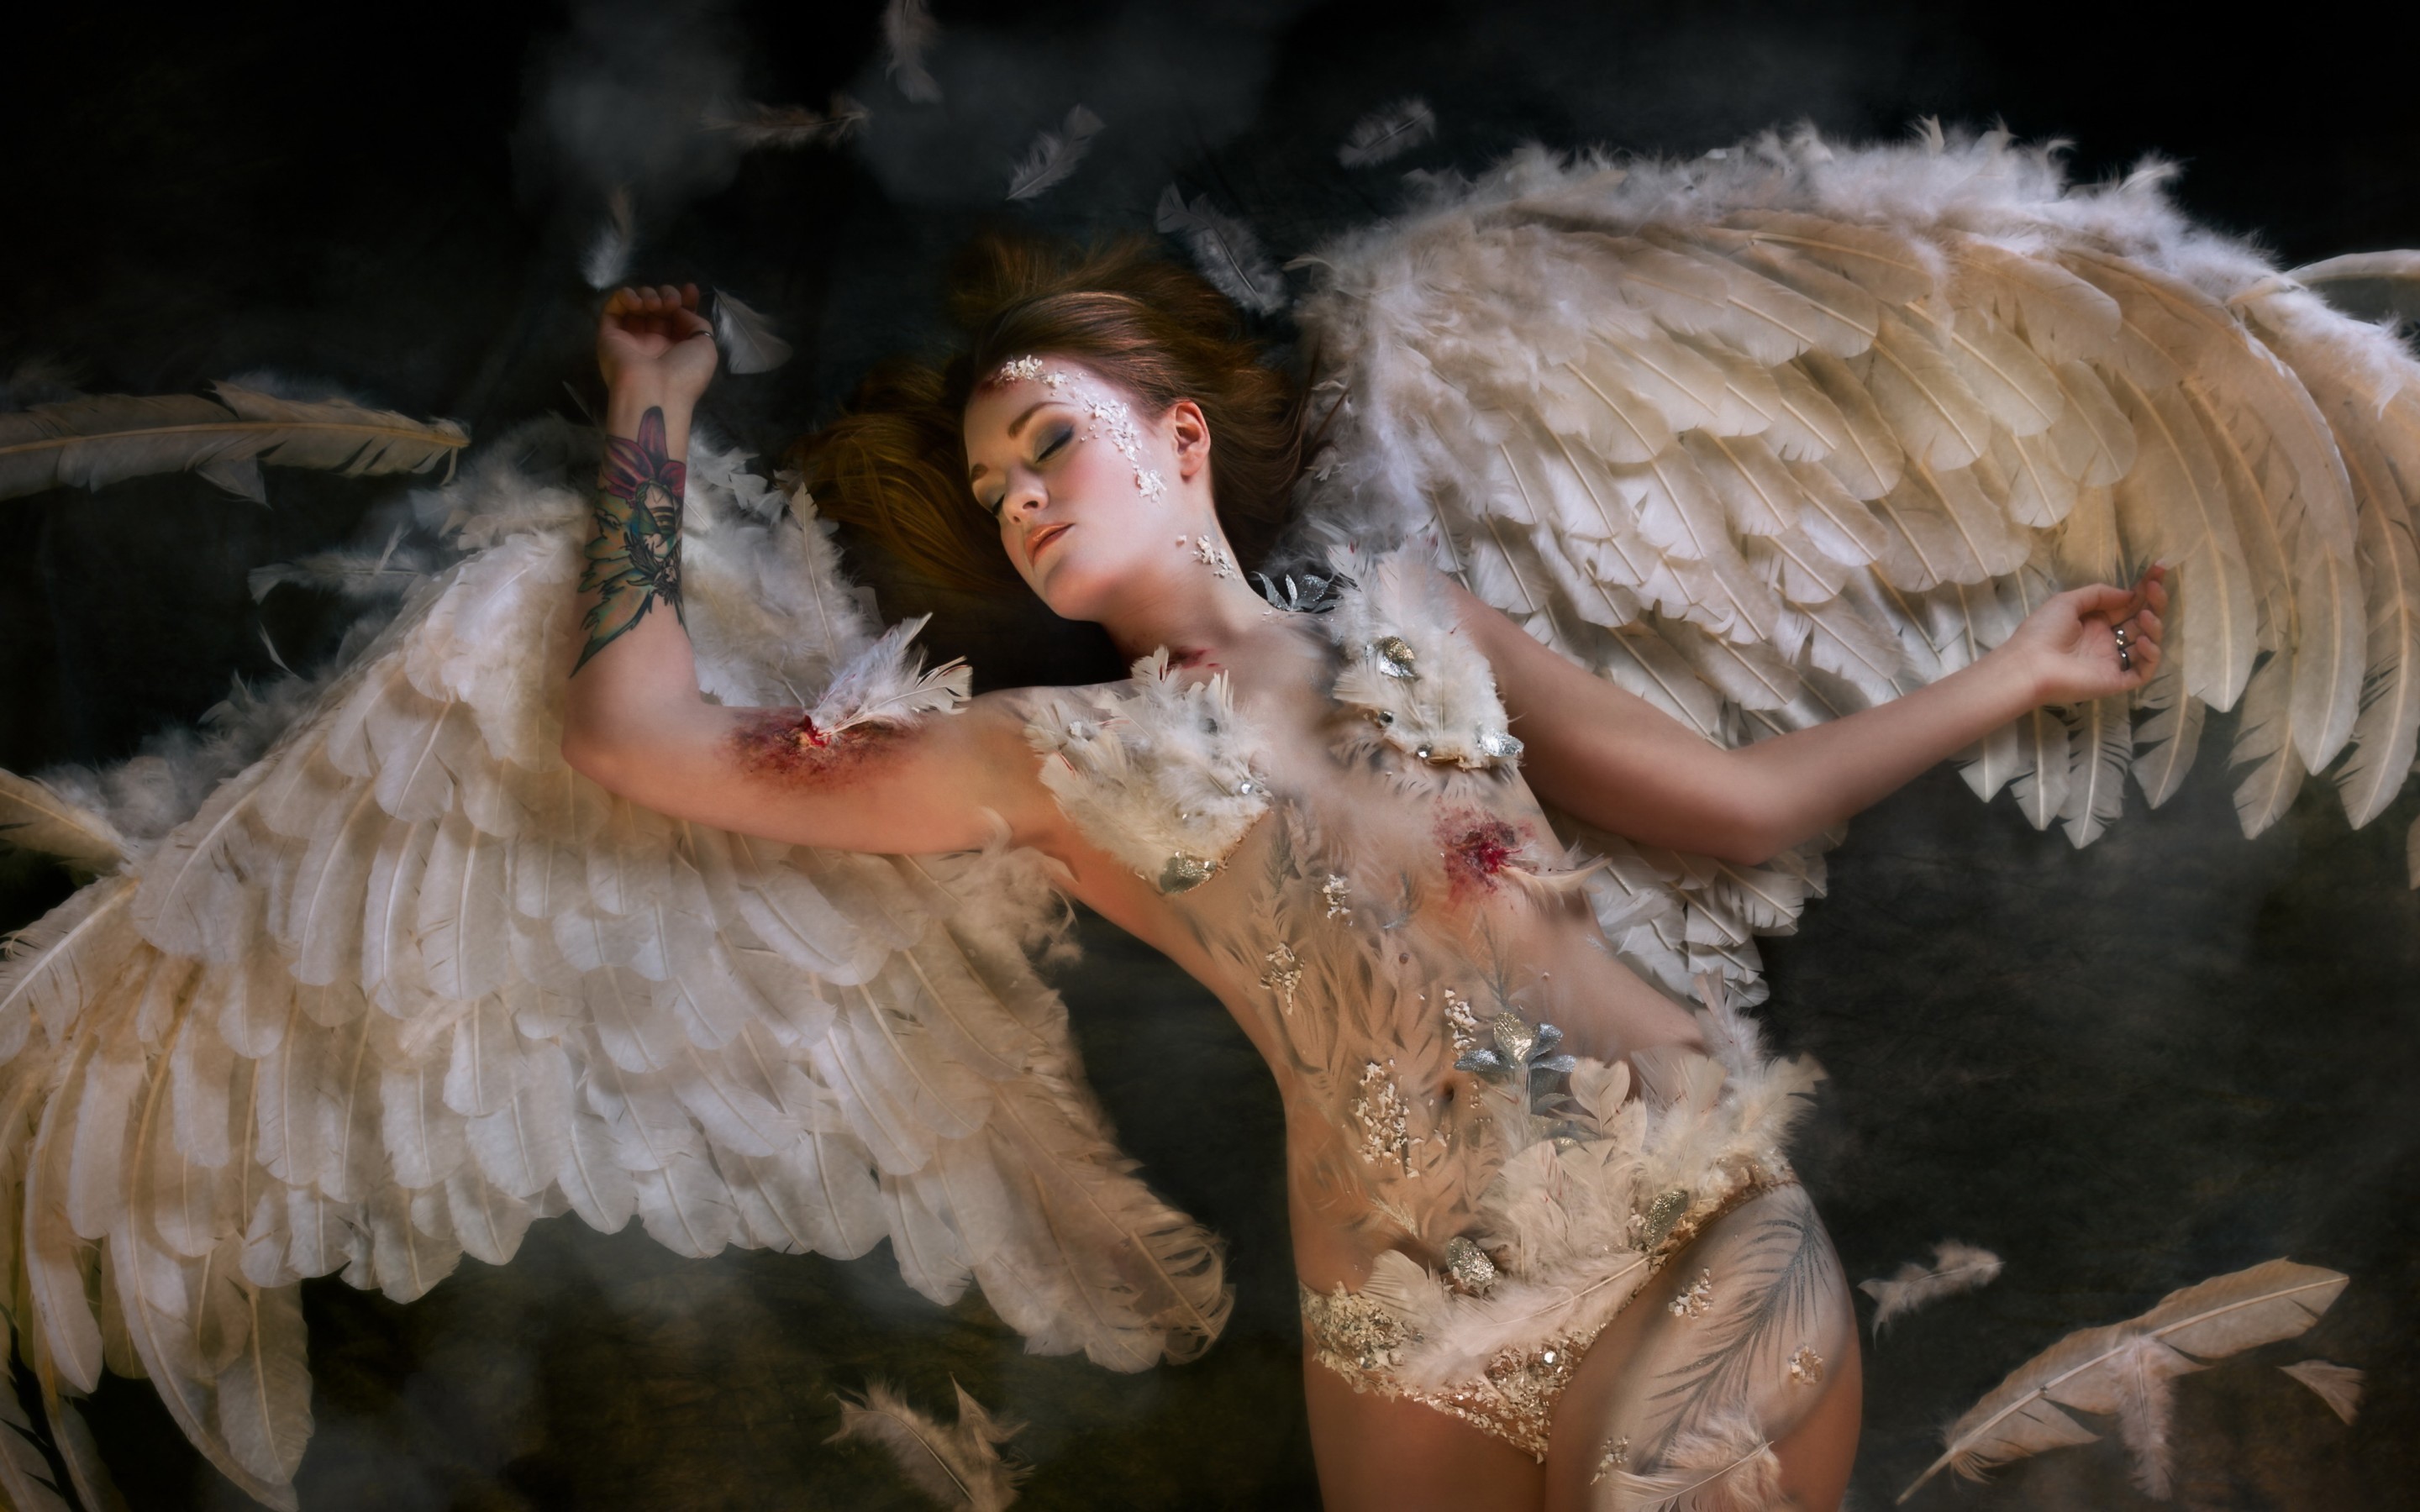 People 2880x1800 angel wings women model blood wounds dead inked girls fantasy girl lying down death